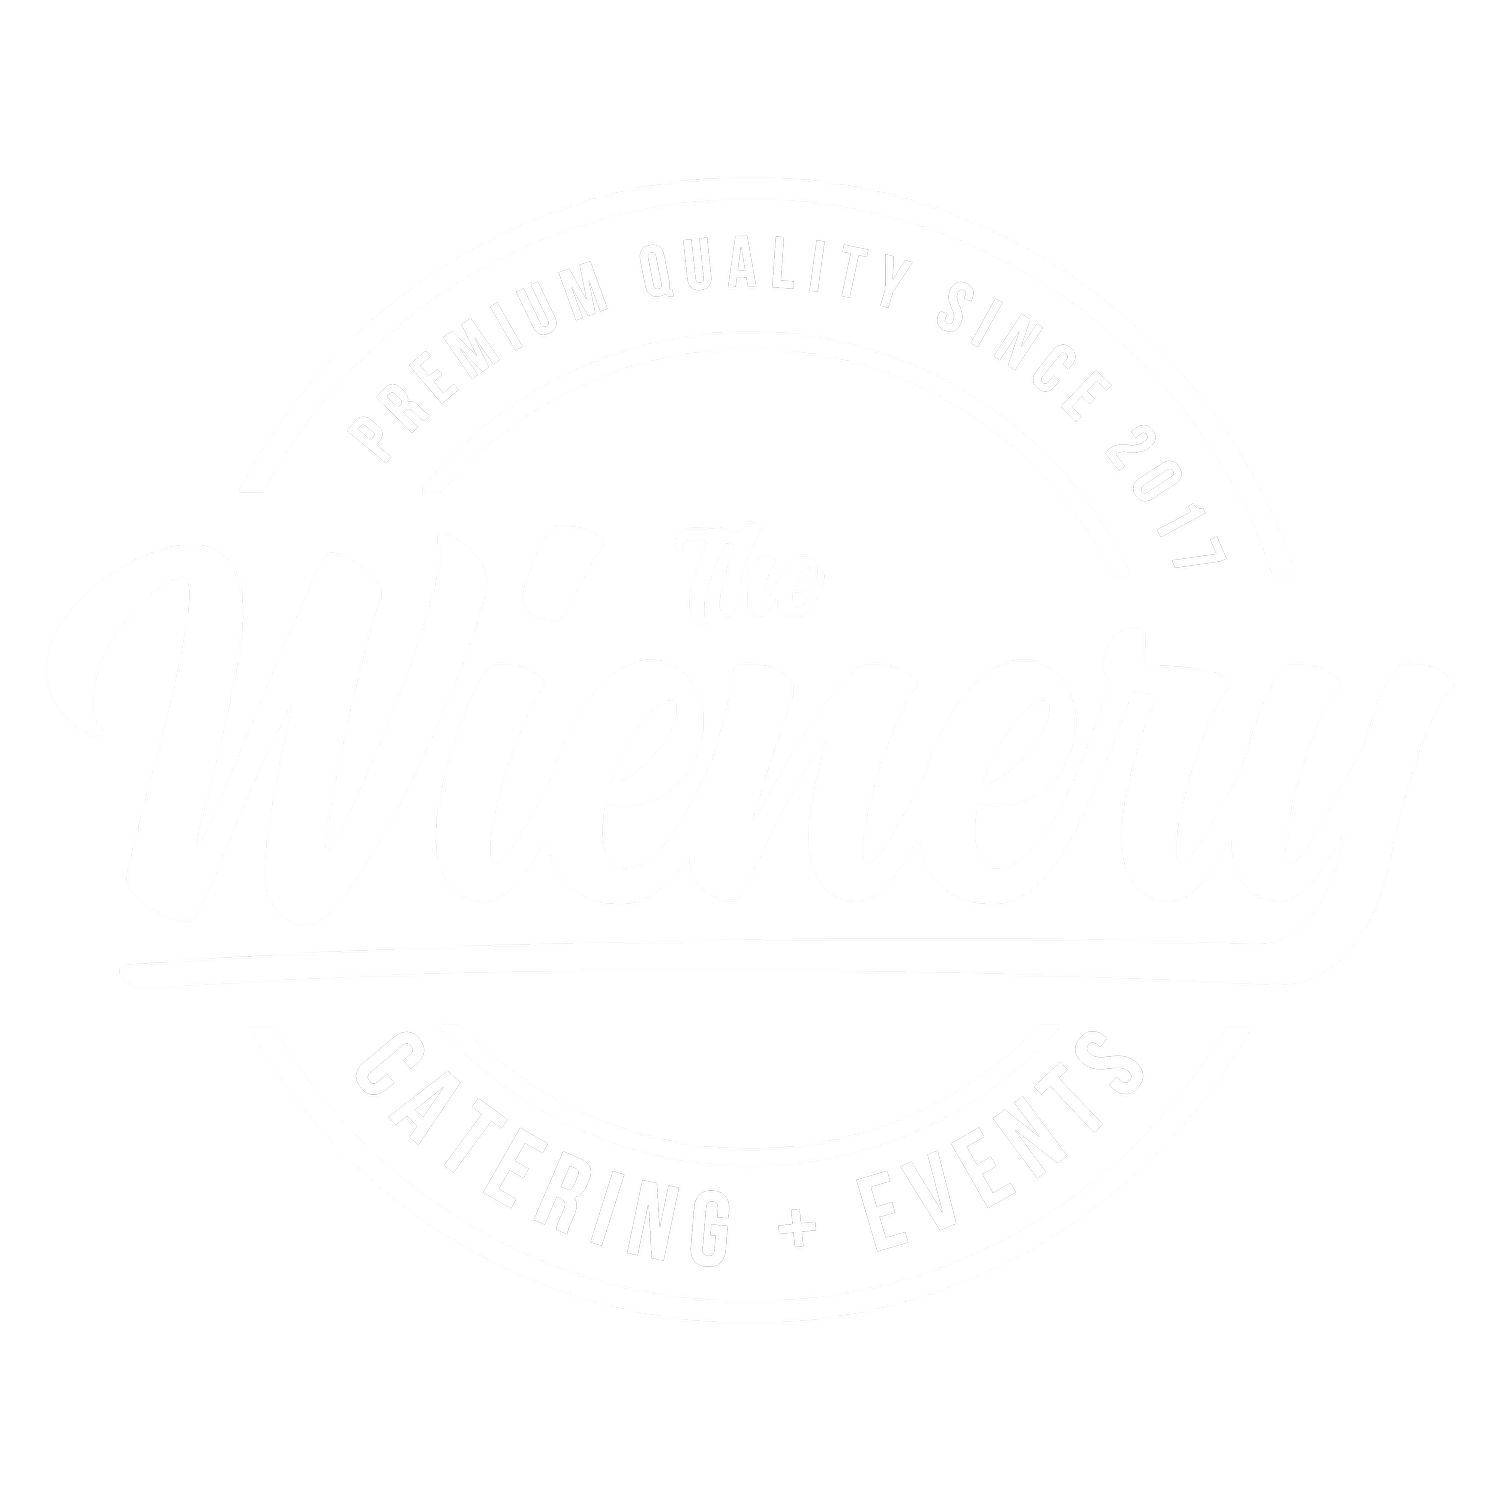 The Wienery